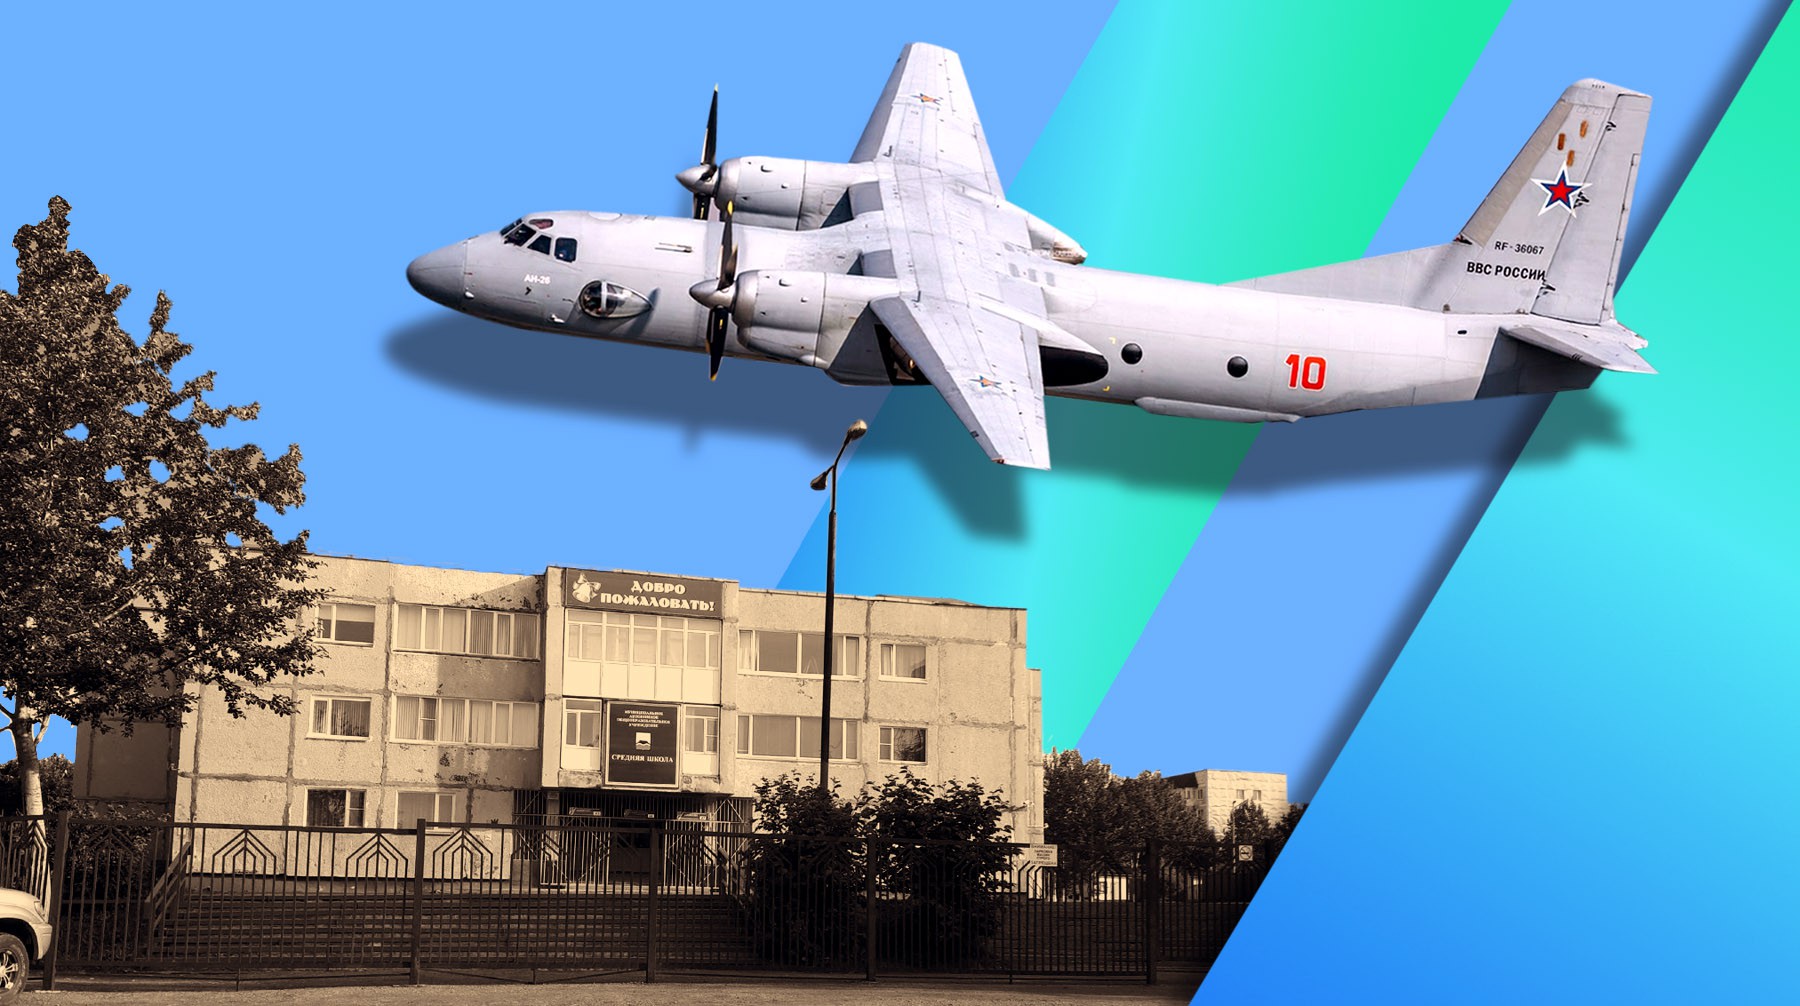 Dailystorm - На Камчатке показали фото школы, которую собирались строить пассажиры пропавшего Ан-26